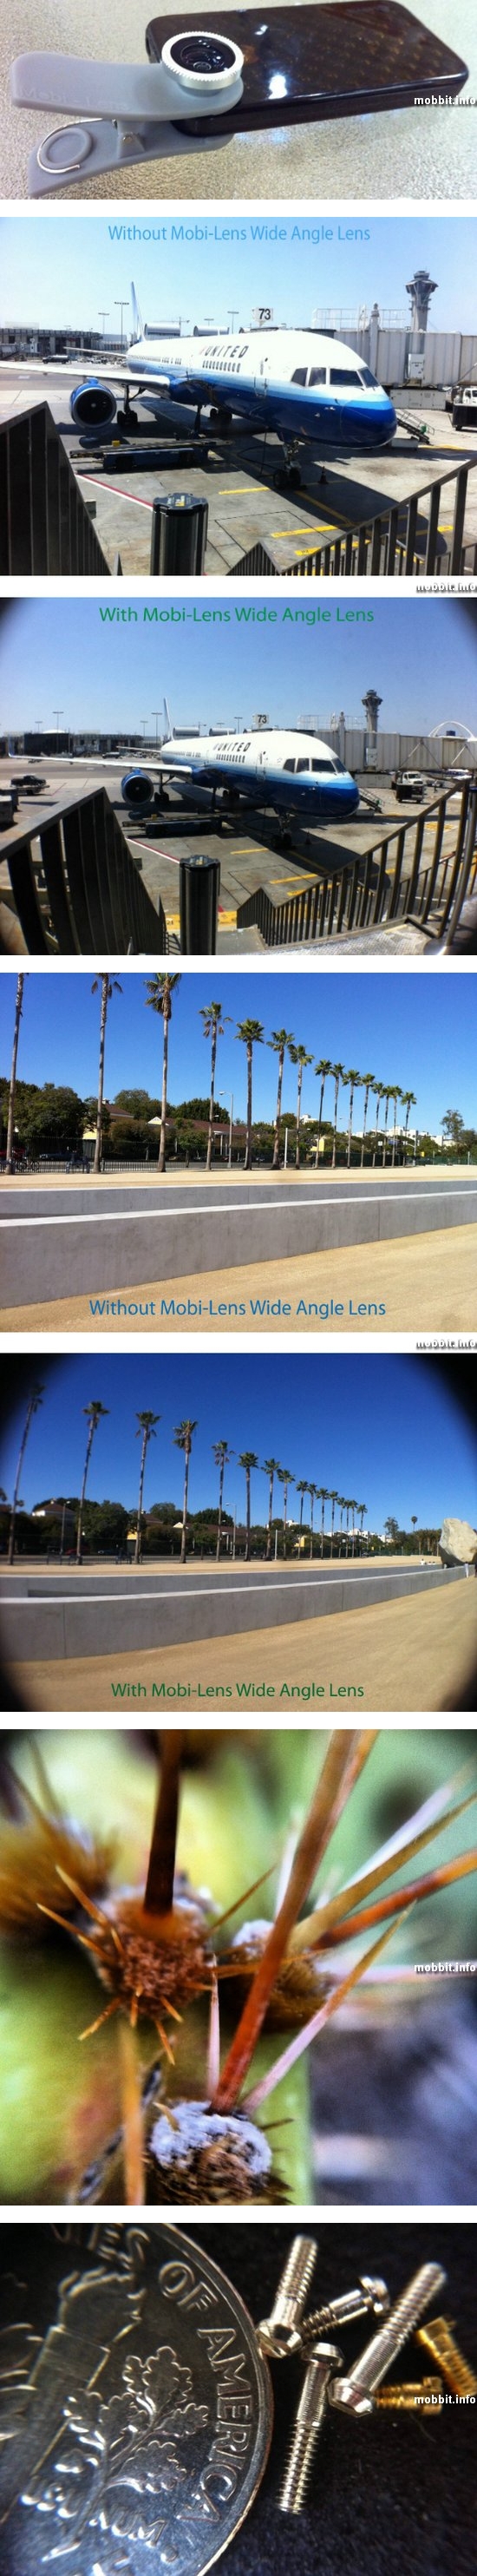 Mobi-Lens